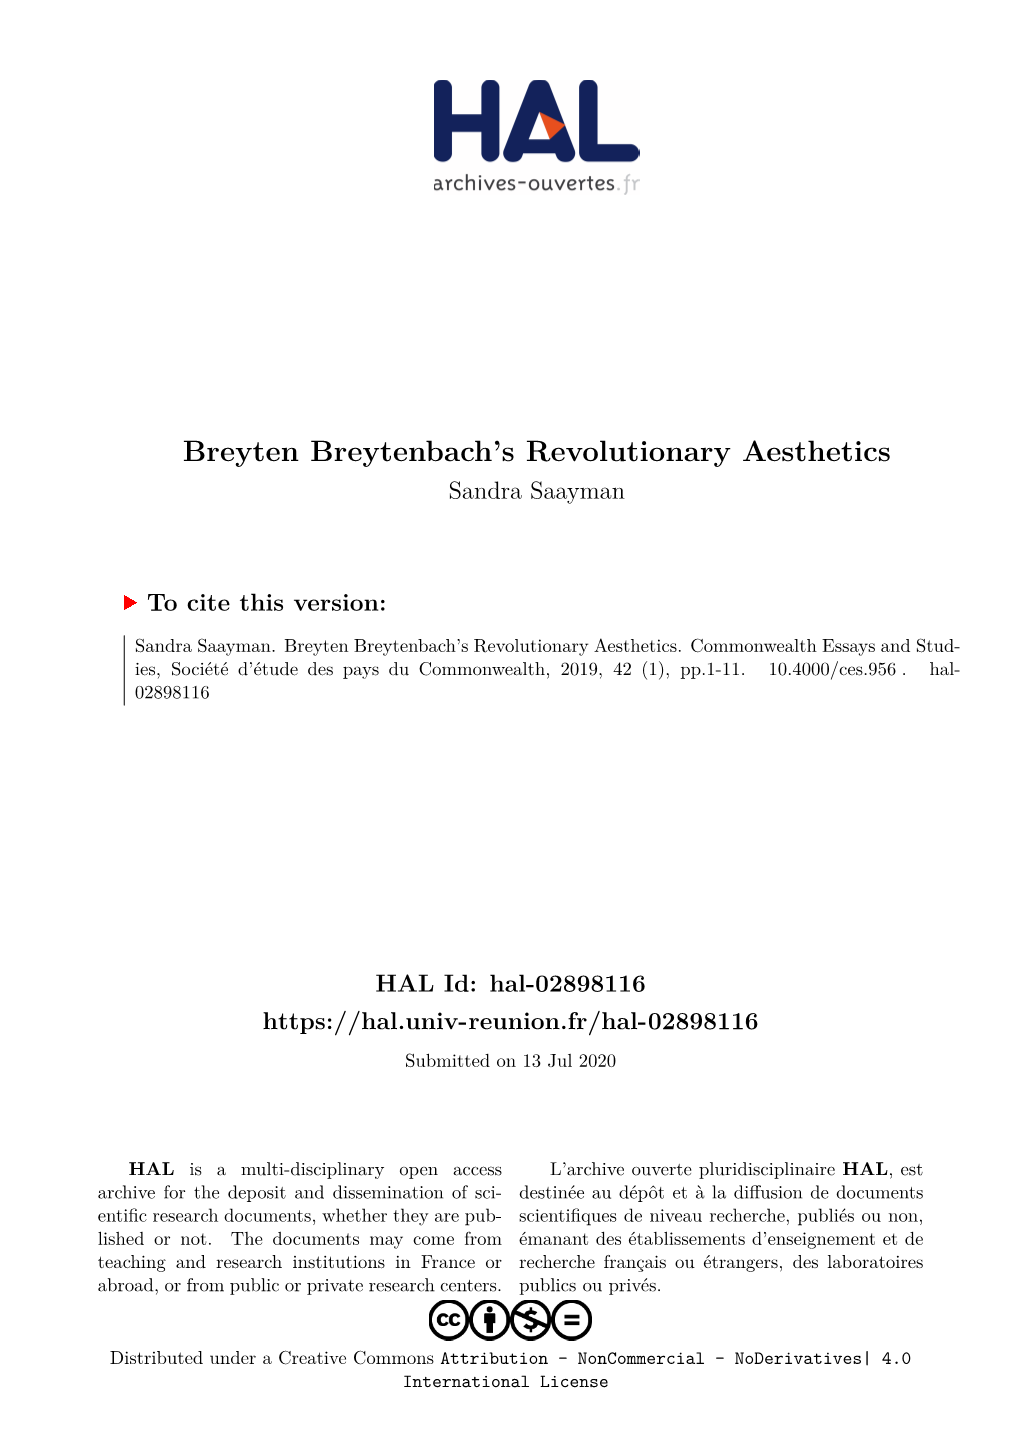 Breyten Breytenbach's Revolutionary Aesthetics